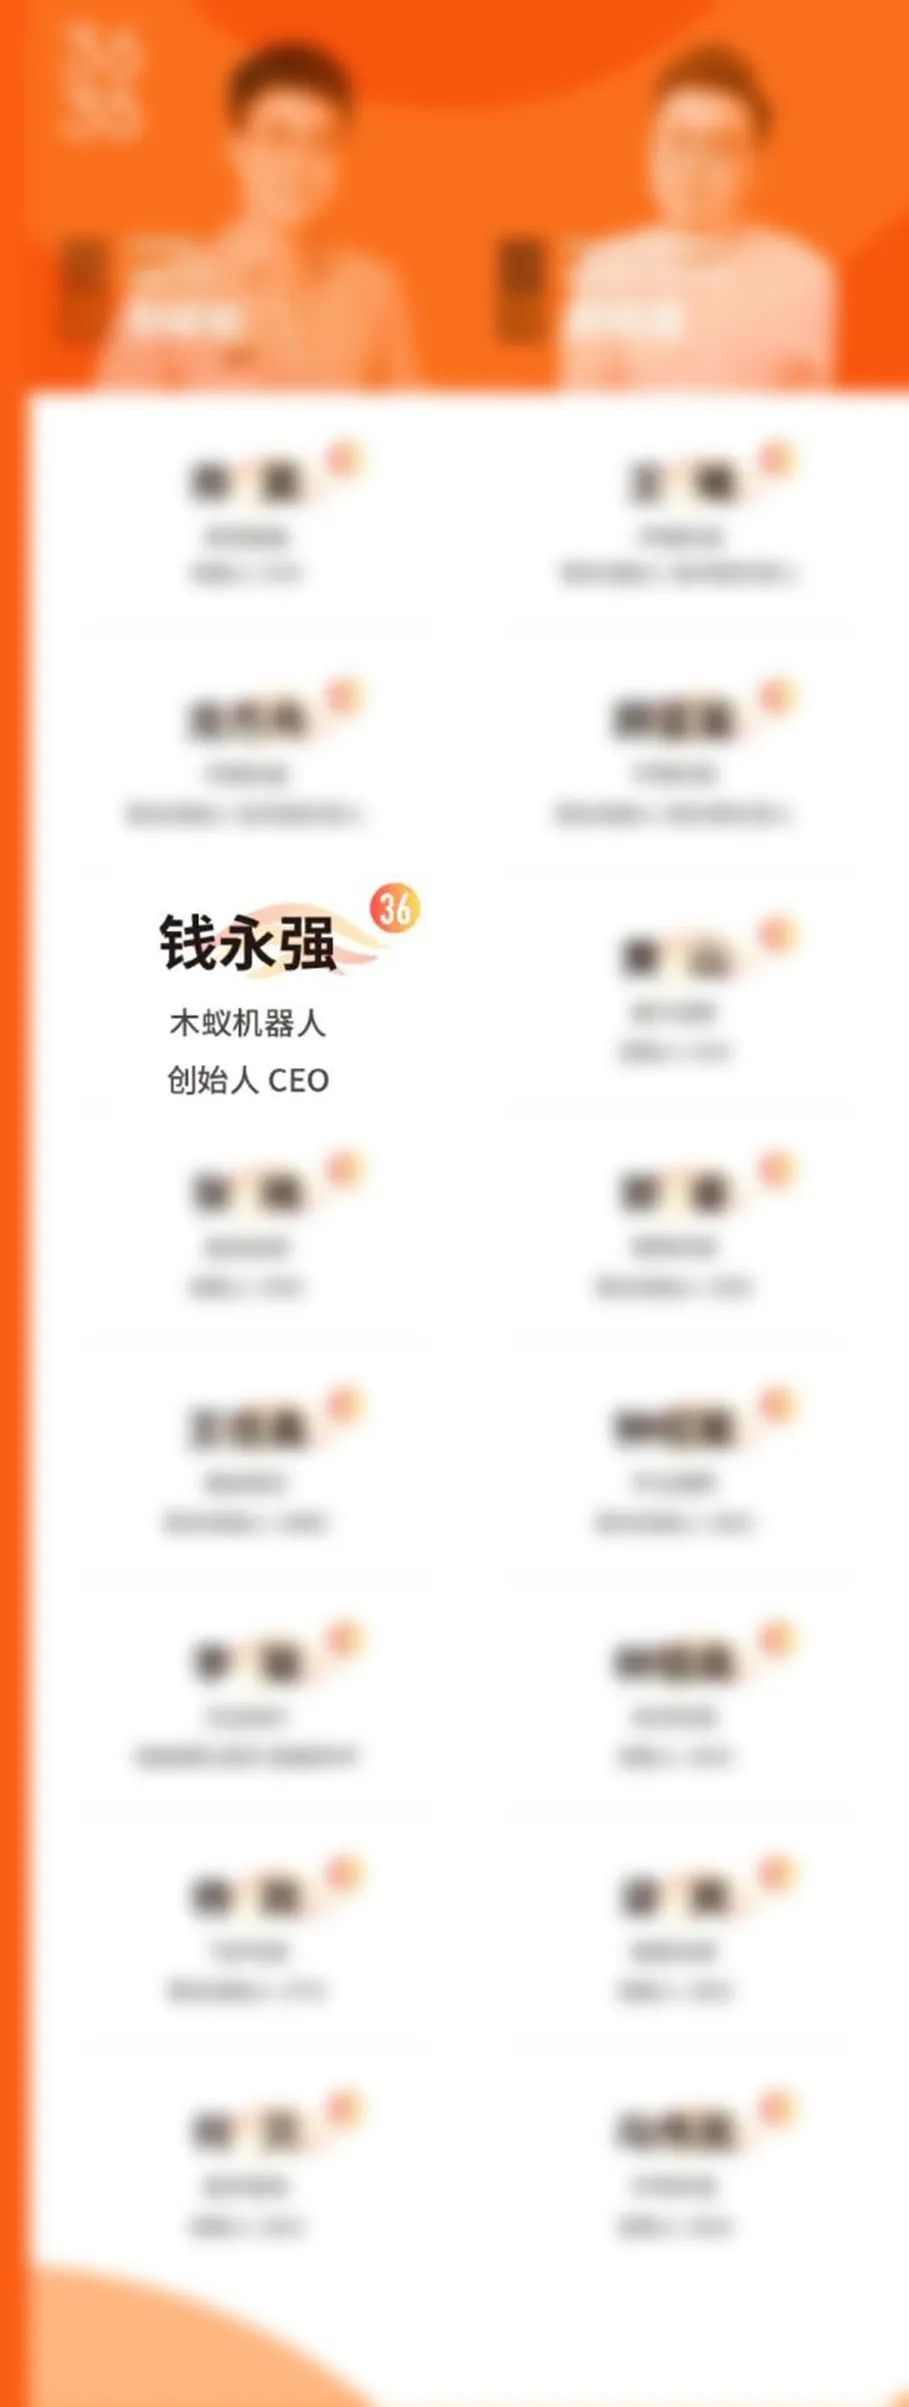 步履不停 | 木蚁机器人CEO再次荣登36Under36榜单(图2)